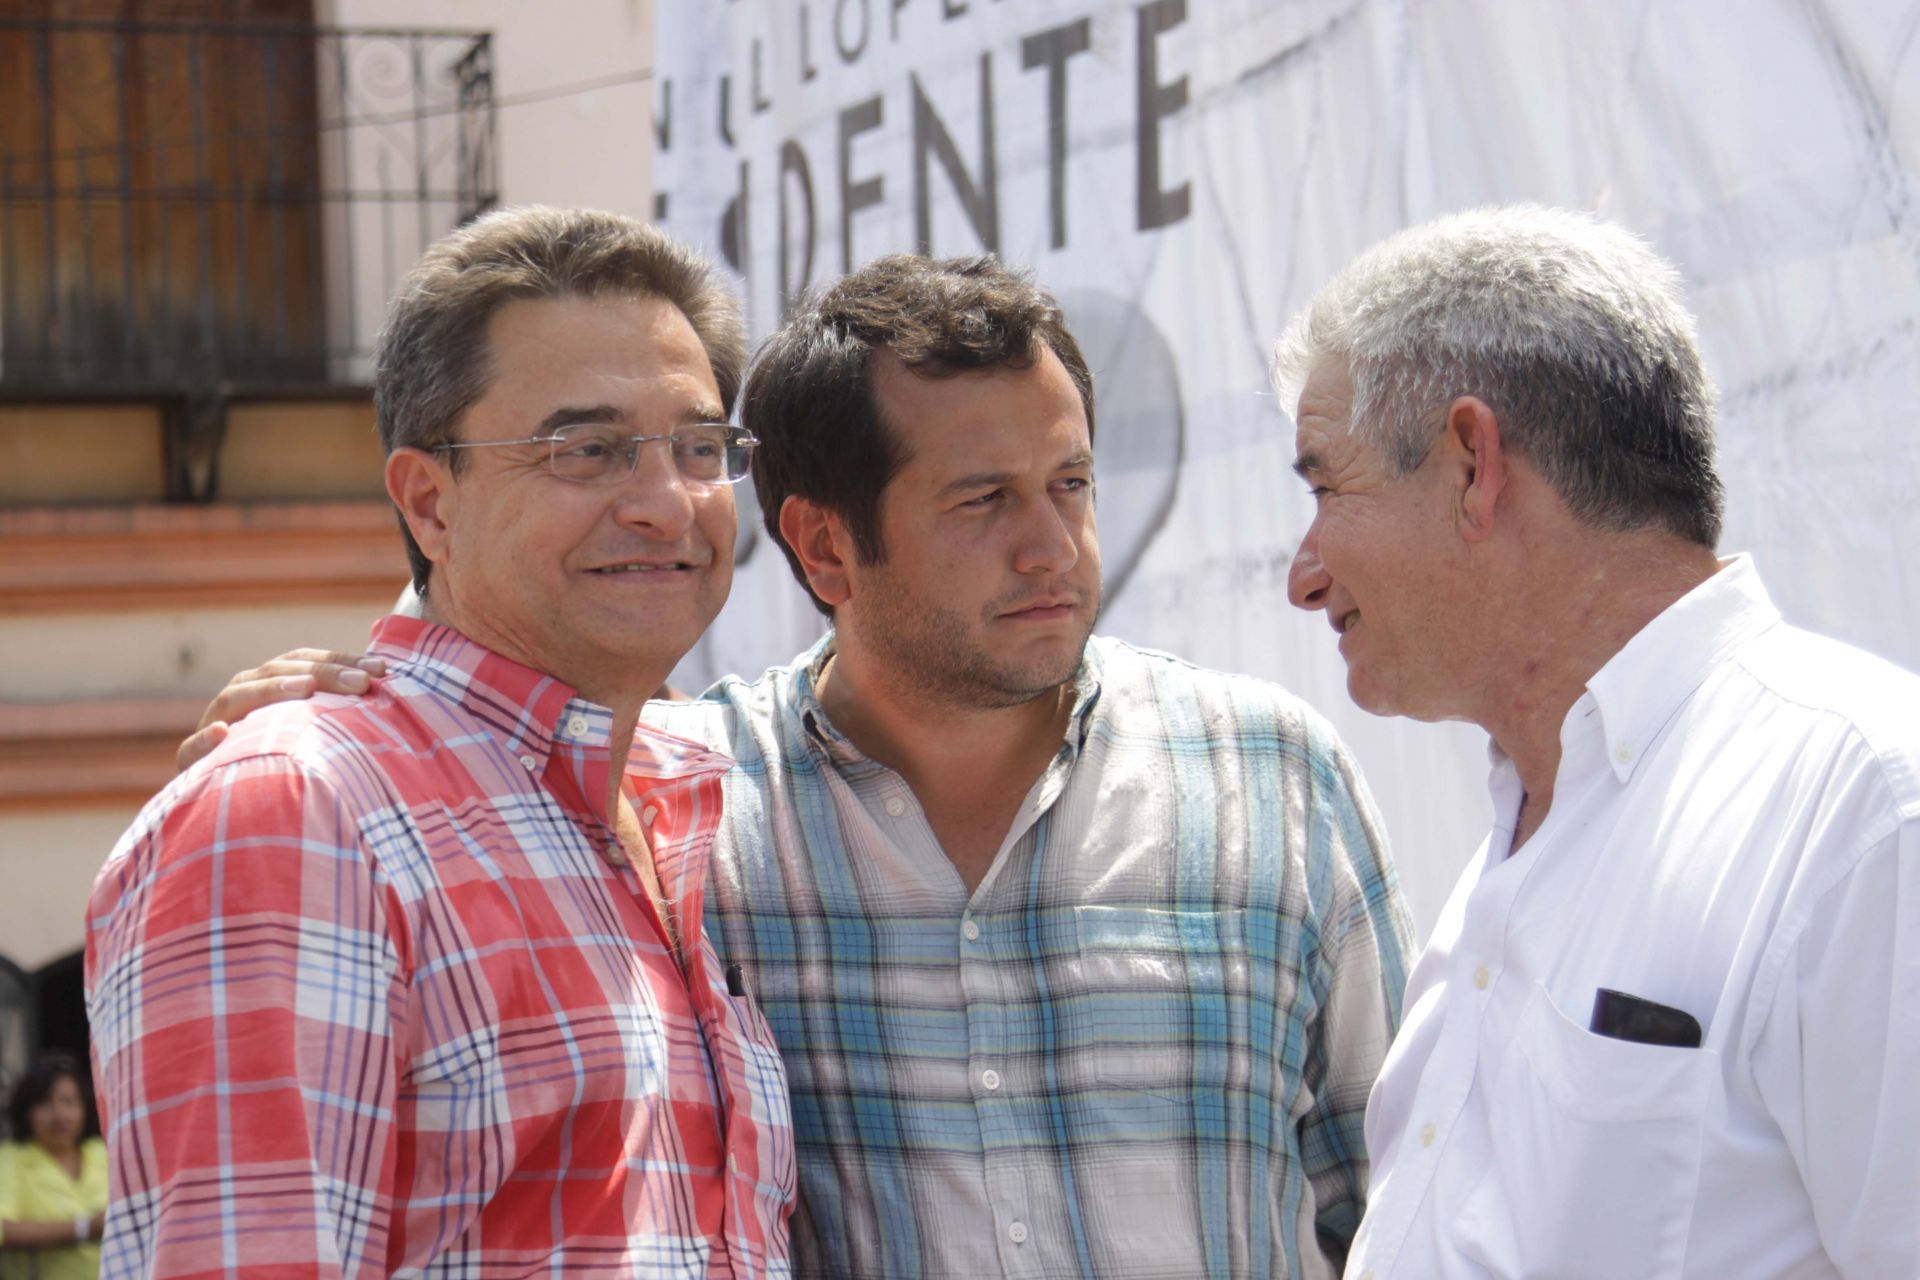 De acuerdo con el periodista, Pío López Obrador solicitó 12 años de cárcel para quien resulte culpable de difundir los videos en los que aparece (Foto: Iván Stephens / Cuartoscuro)